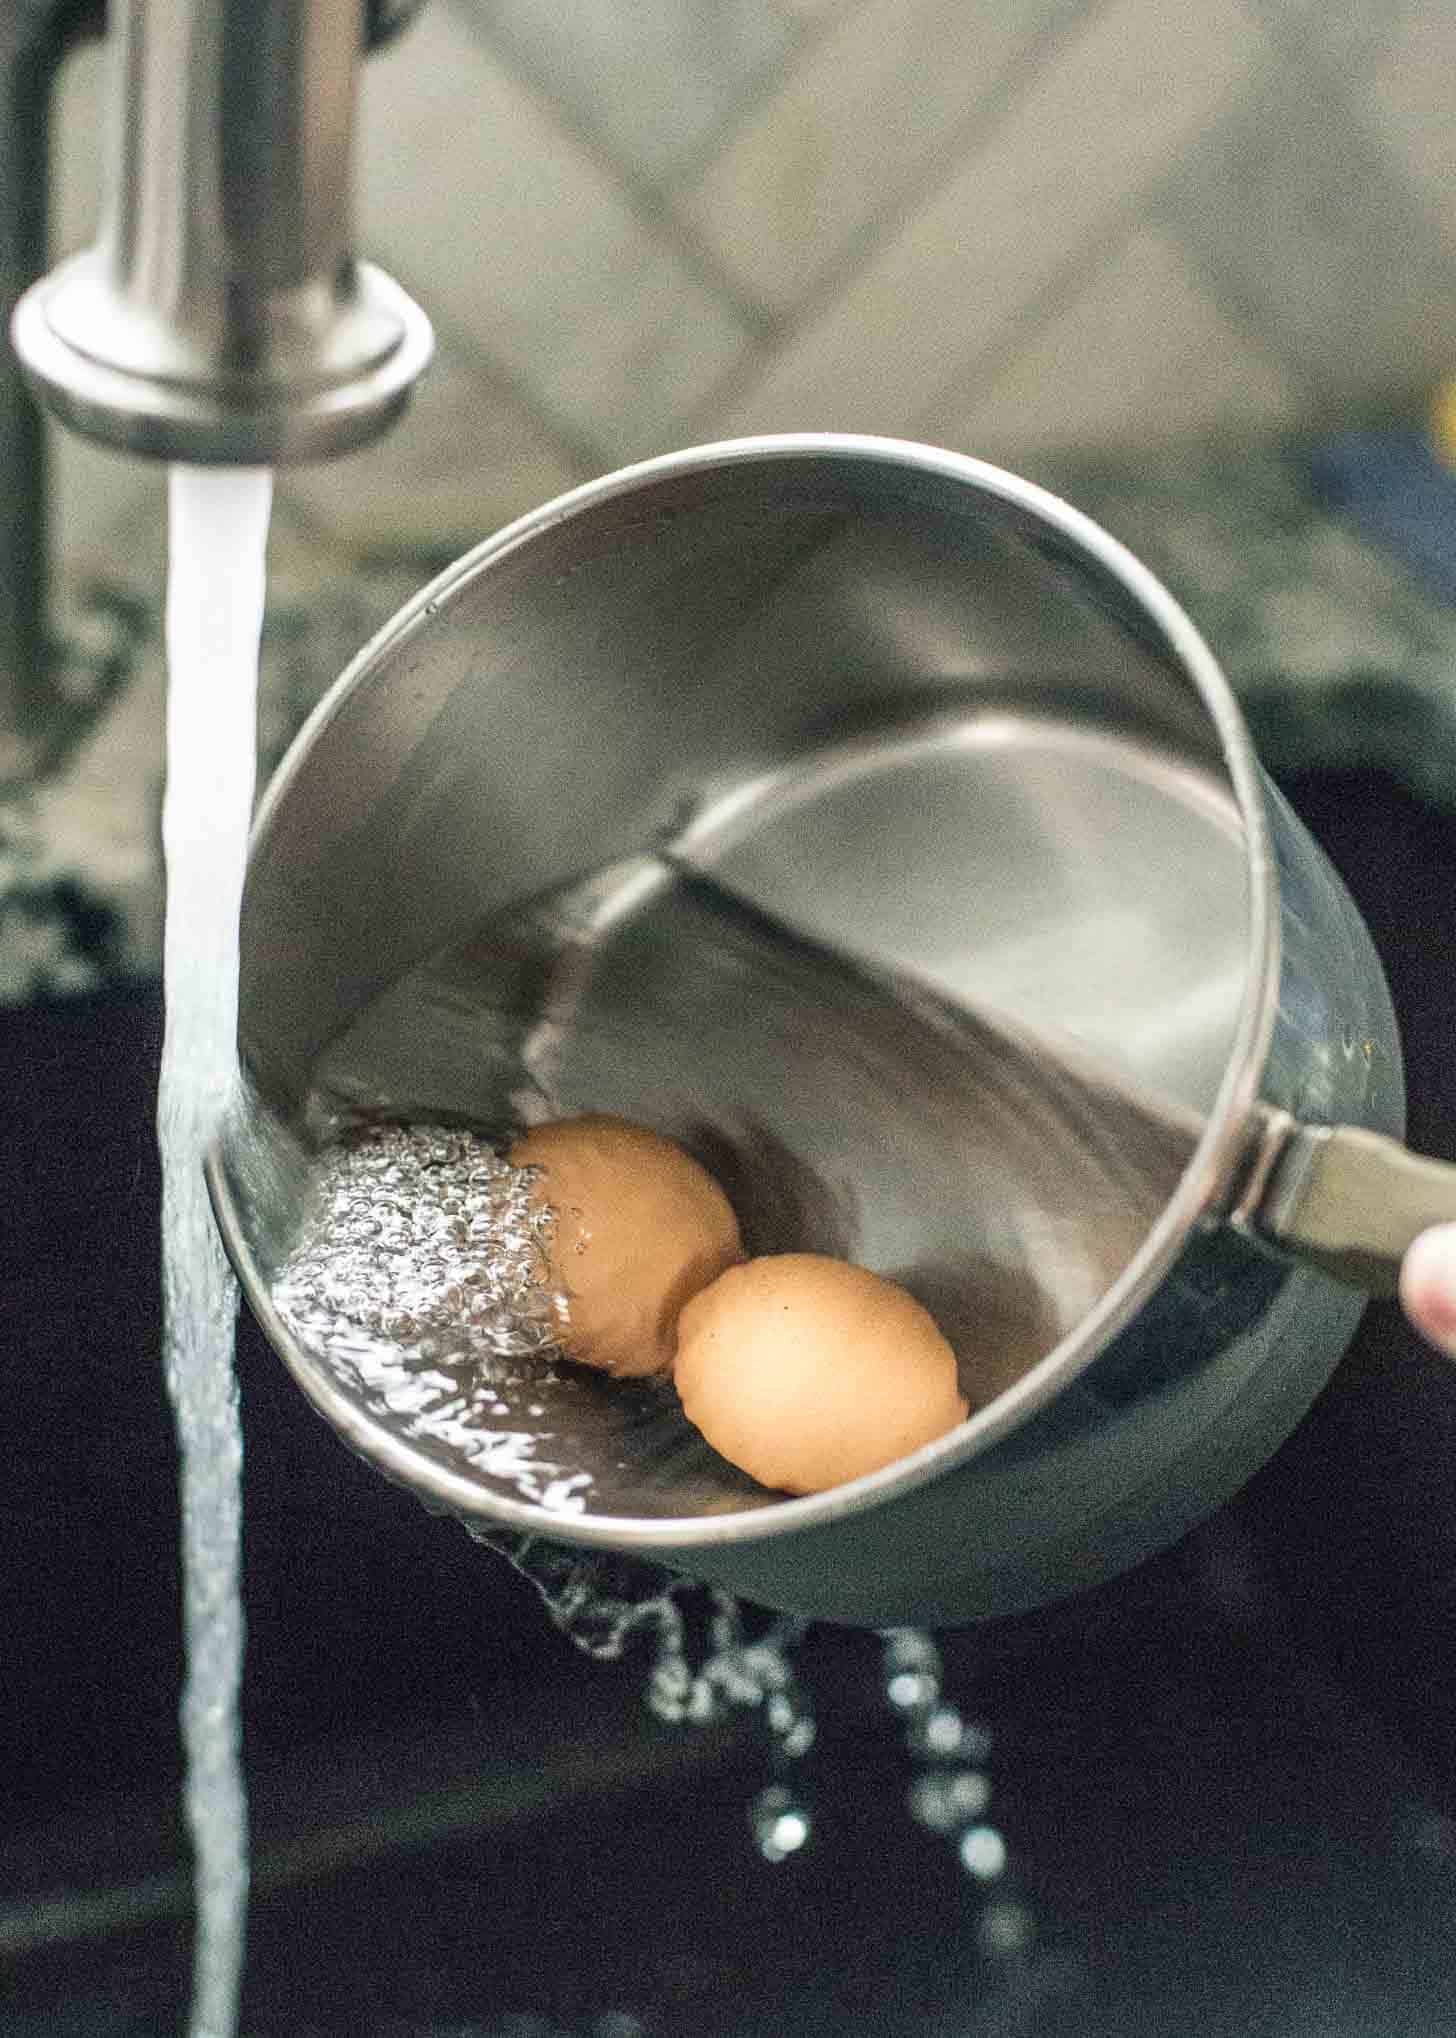 rinsing eggs in a saucepan